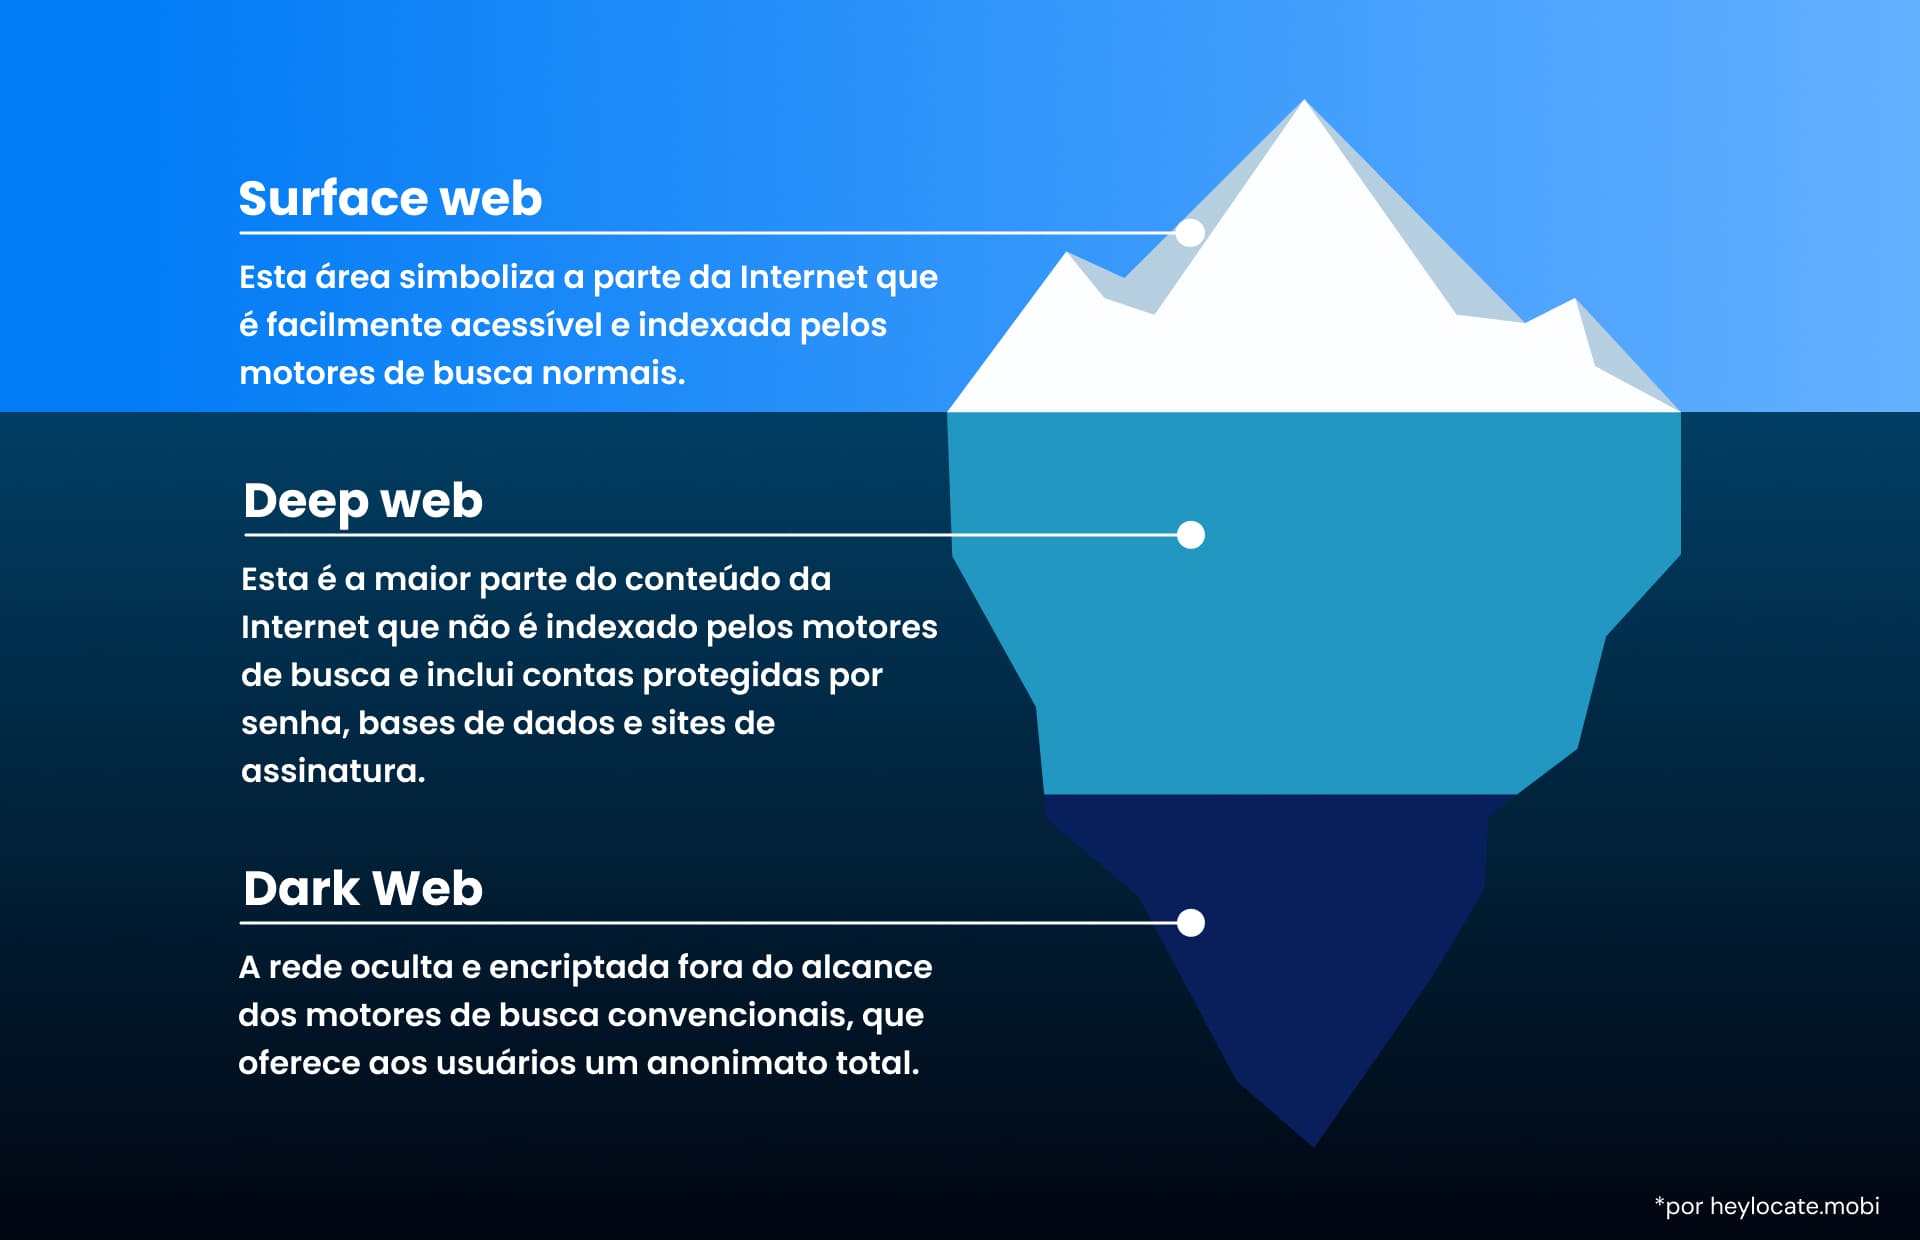 Uma imagem de um iceberg com três partes da Web: a Web de superfície pública, a Web profunda e a Web escura anônima